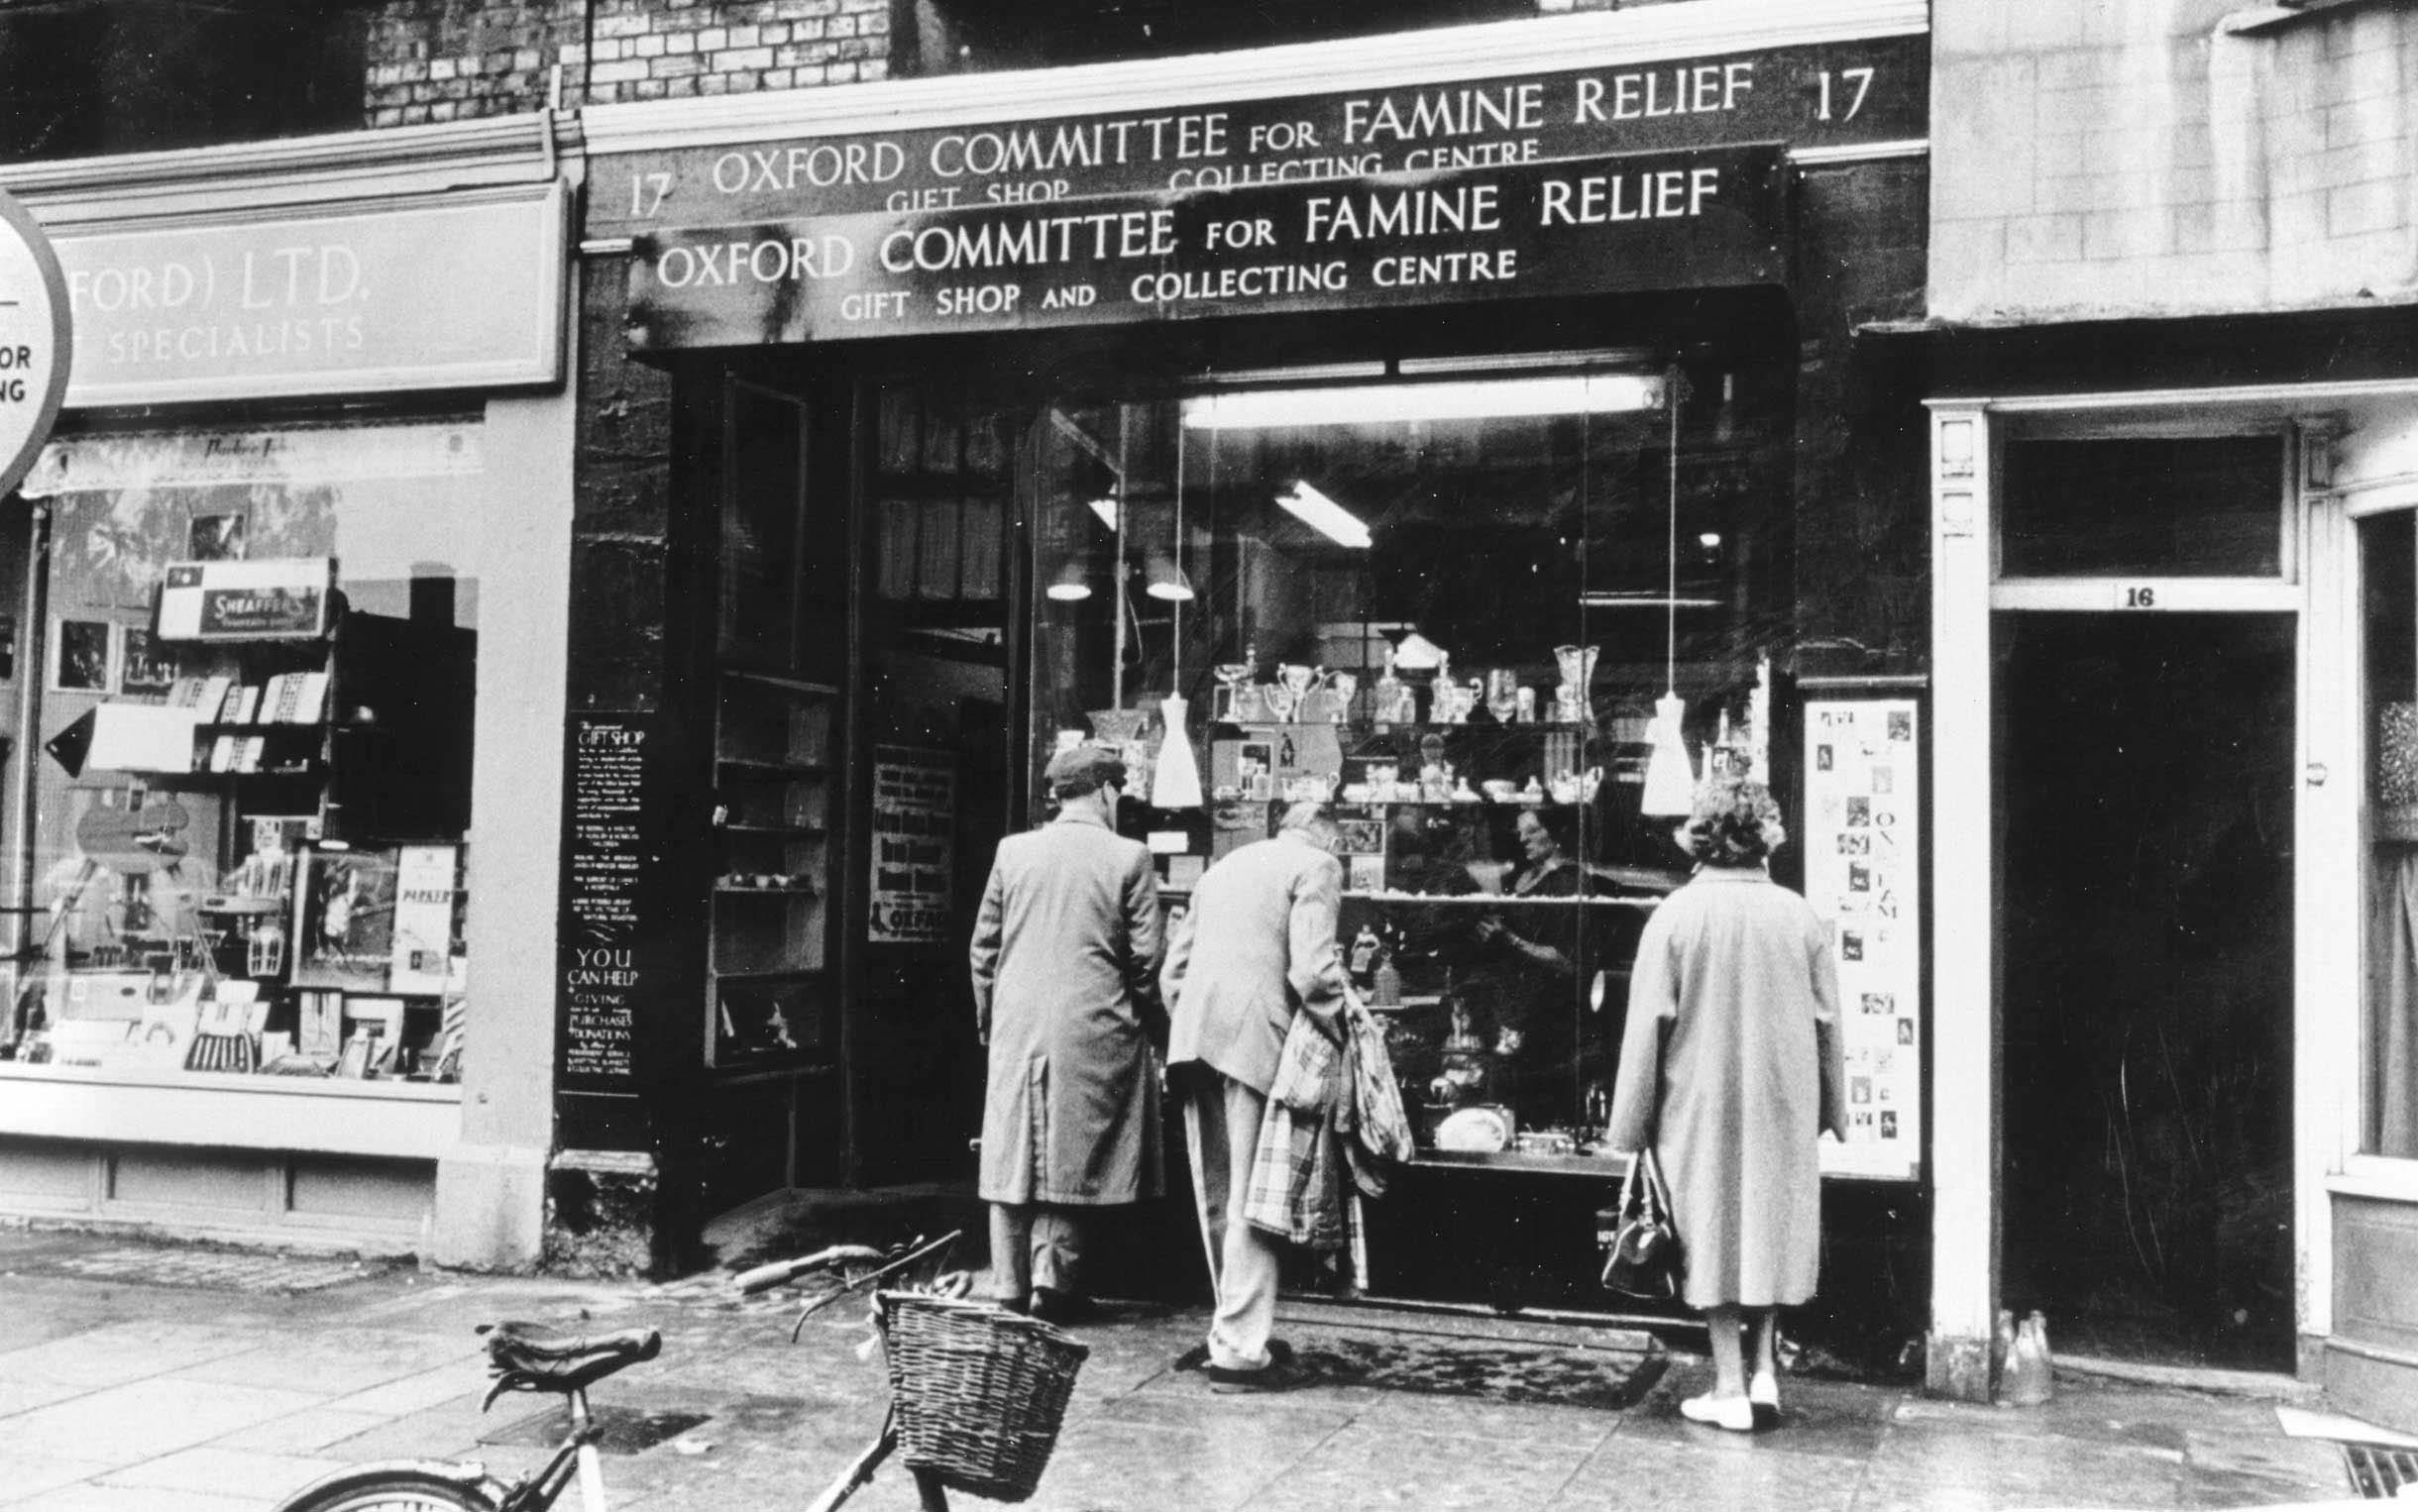 De eerste permanente Oxfam geschenkenwinkel opent in 1947 in Oxford. Collectie Oxfam GB, Bodleian Libraries, University of Oxford.